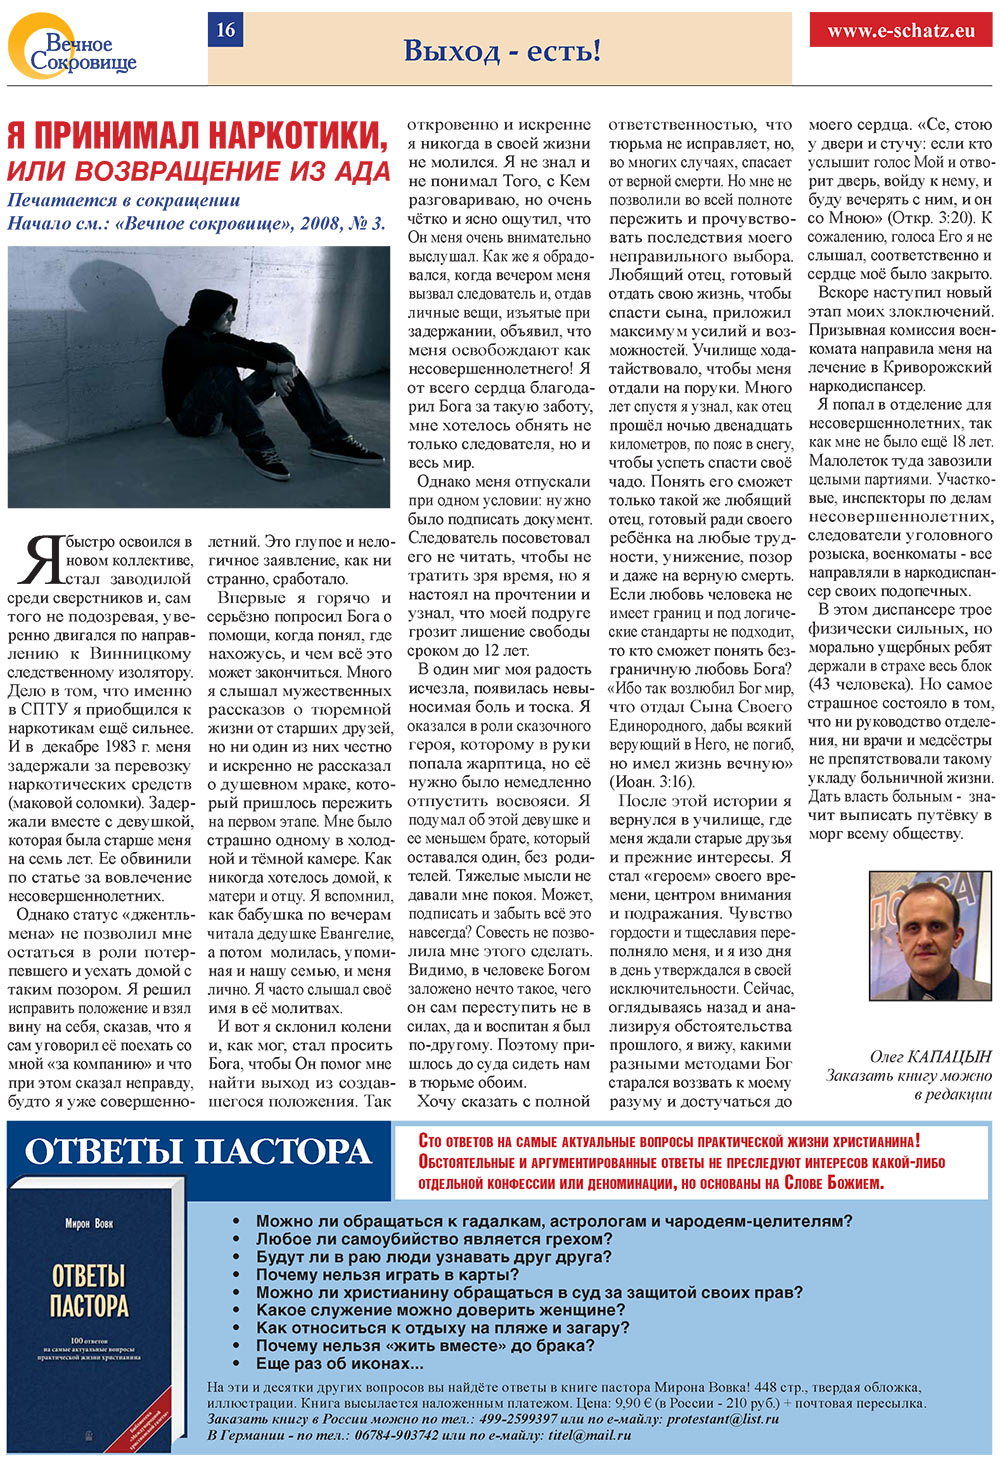 Вечное сокровище, газета. 2008 №4 стр.16